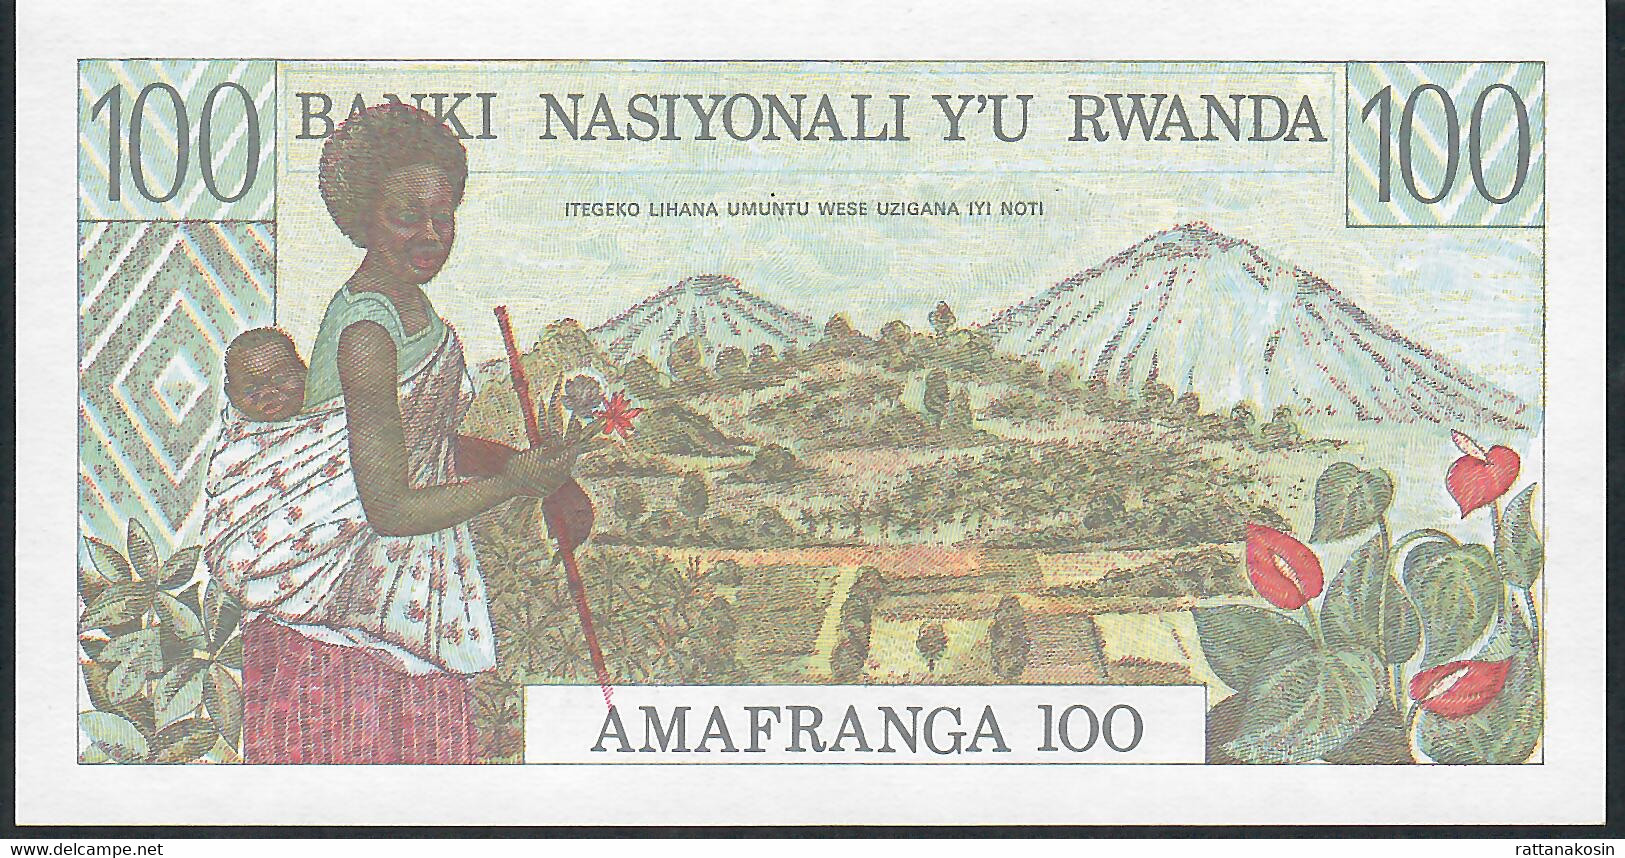 RWANDA P12 100 FRANCS 1.1.1978  #BA      UNC. - Rwanda